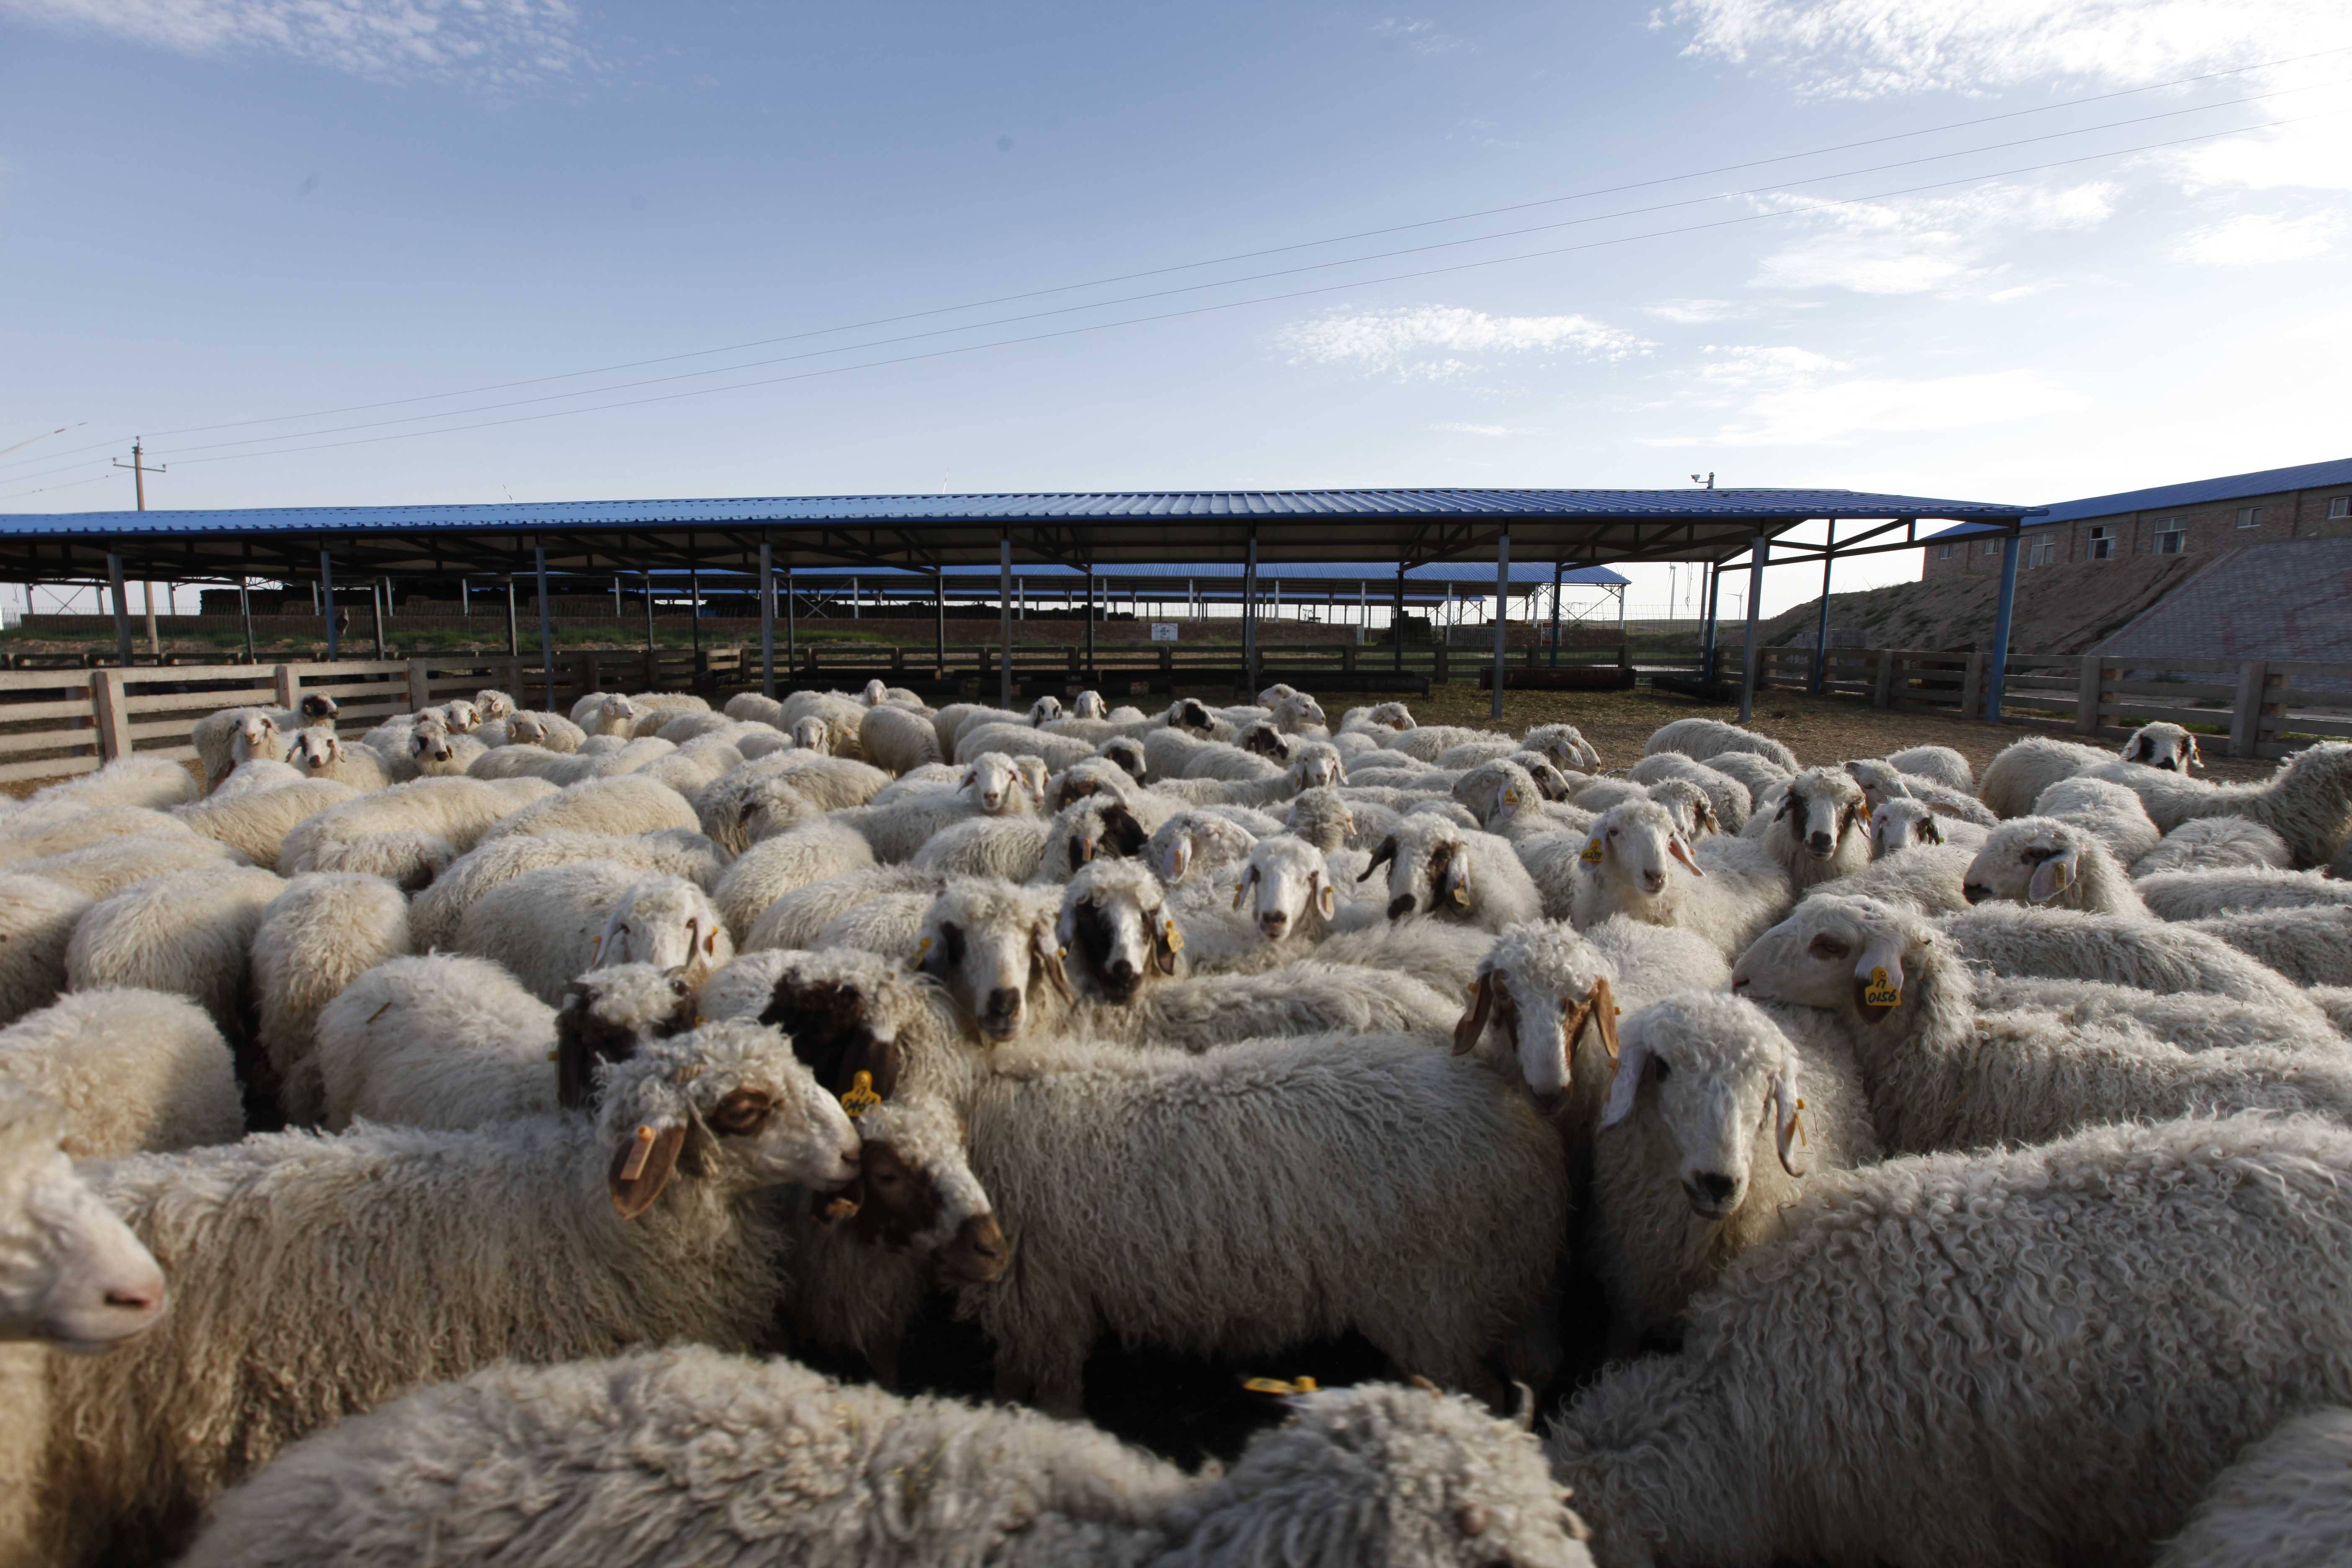 屠宰,加工等27项标准,开发了盐池滩羊基因鉴定技术,实现滩羊系谱,养殖